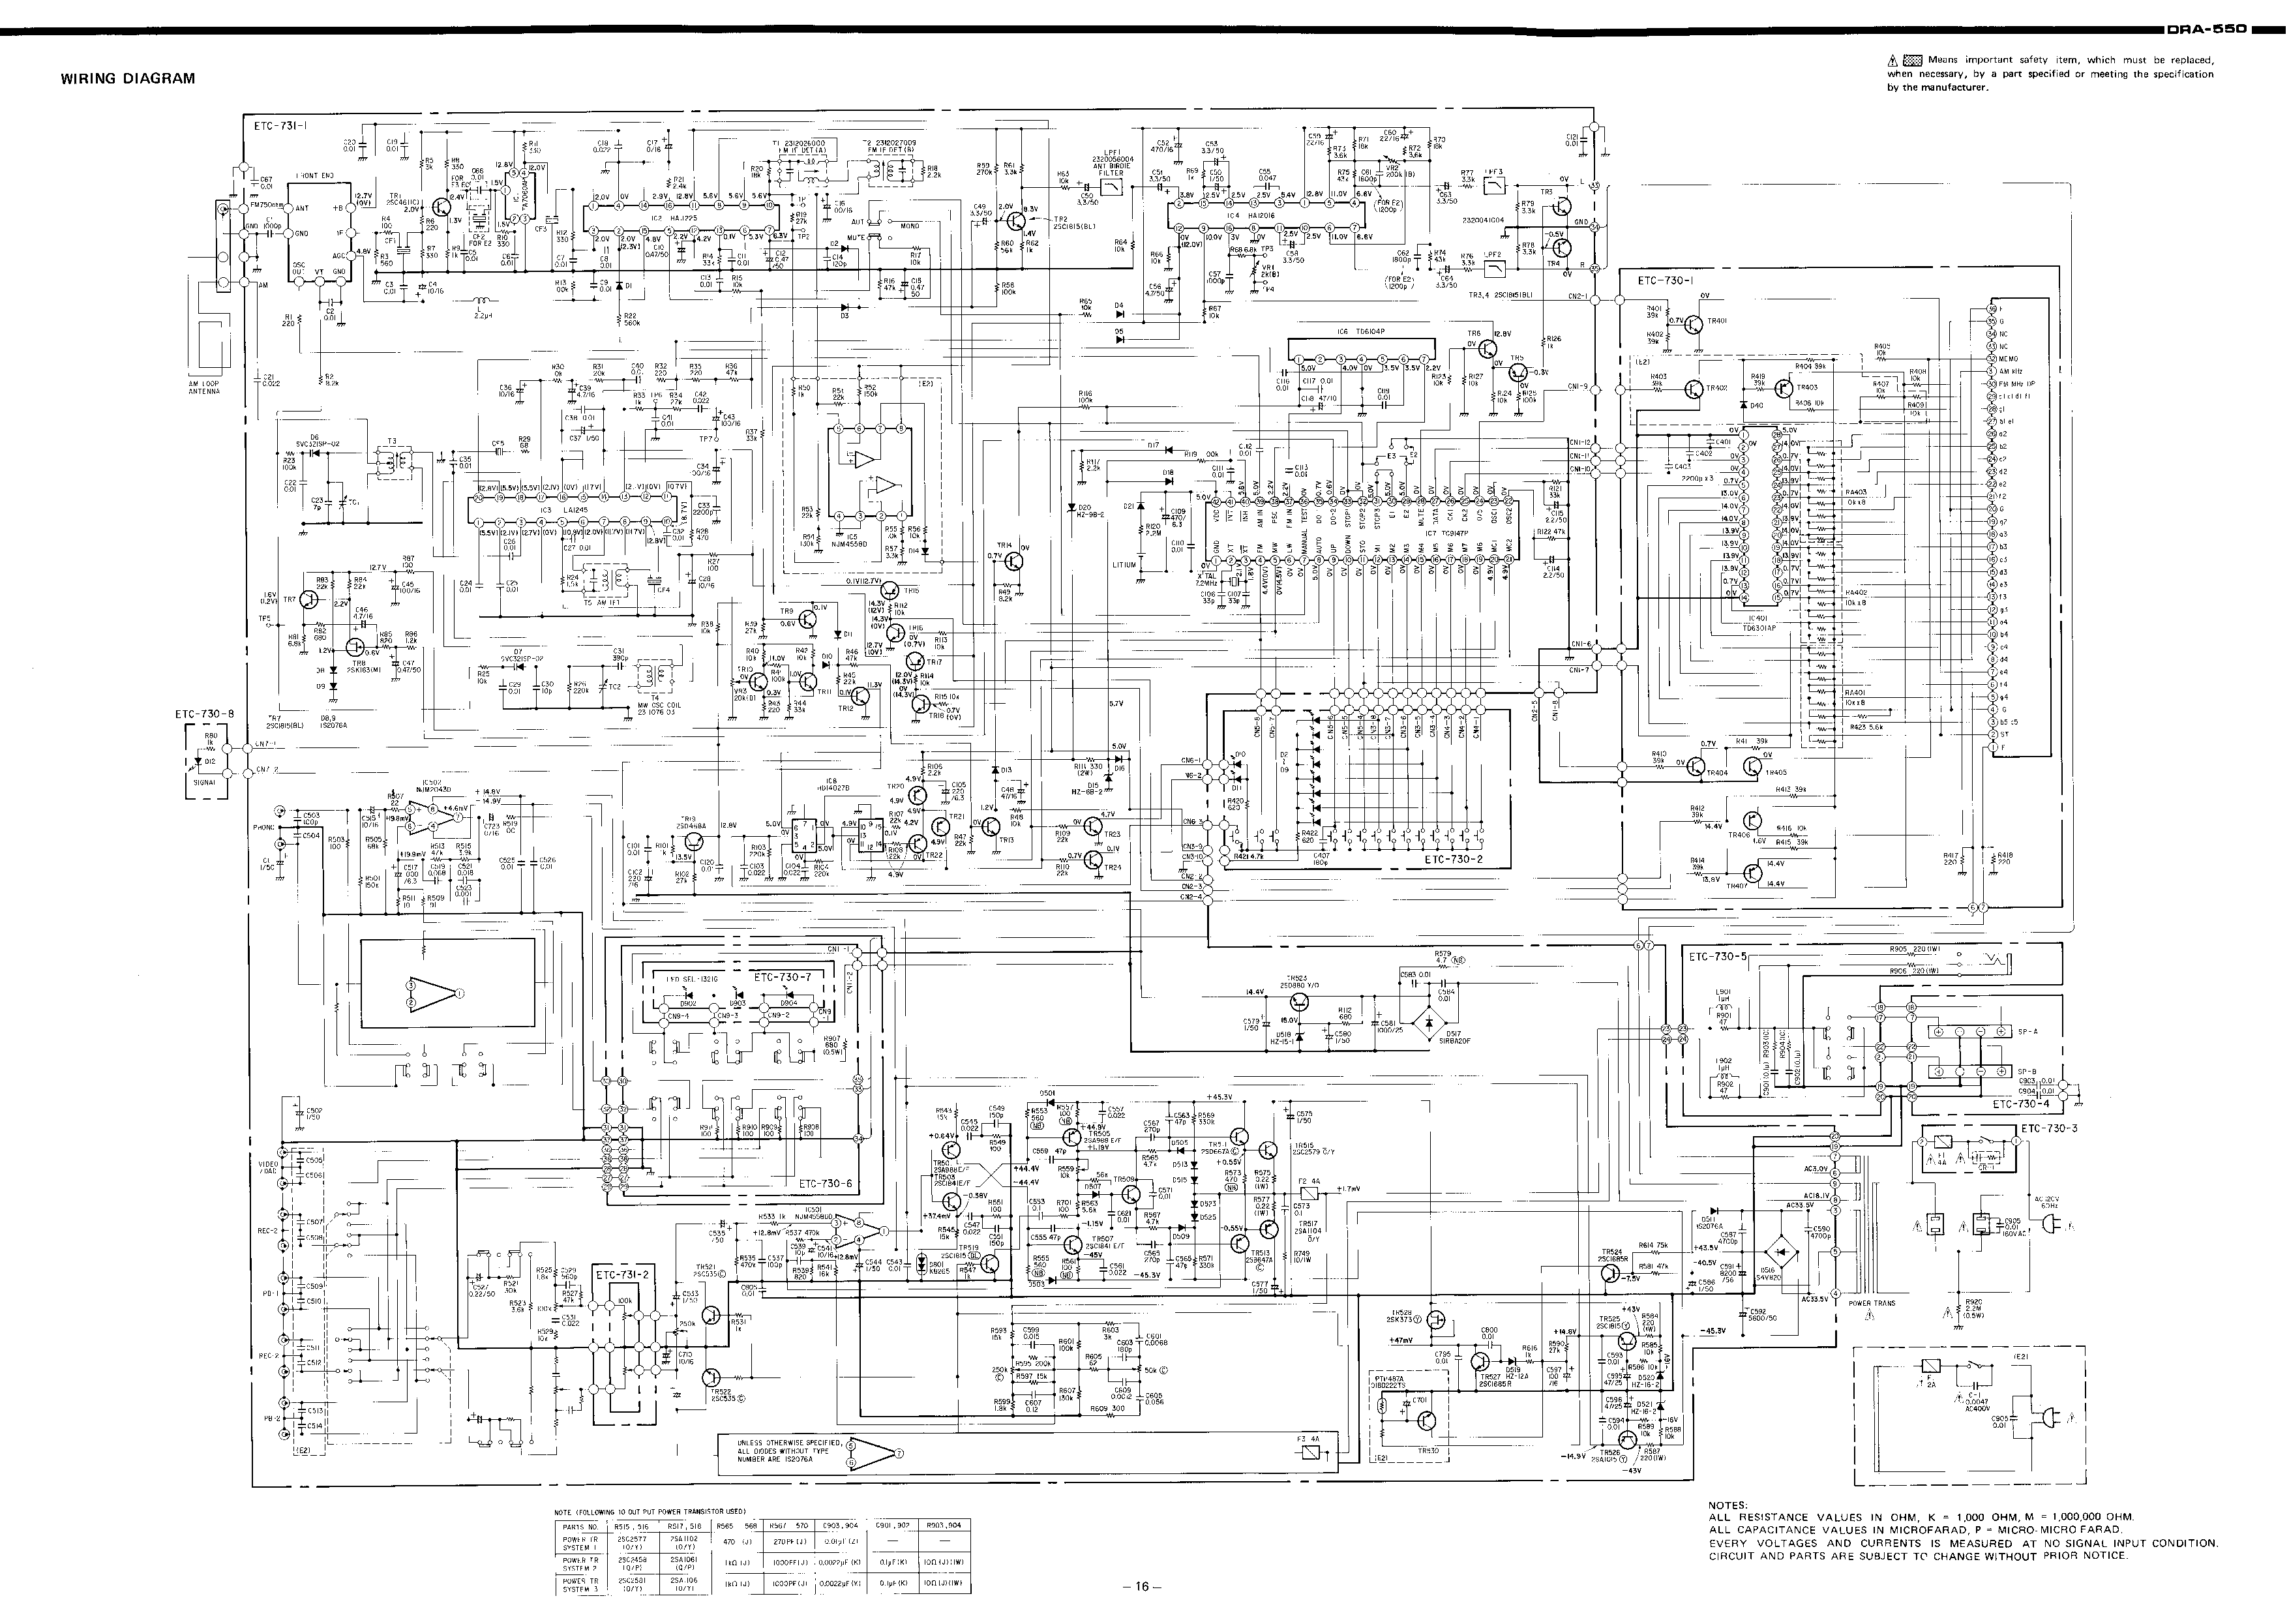 Denon DRA-550 Schematic Diagram 1